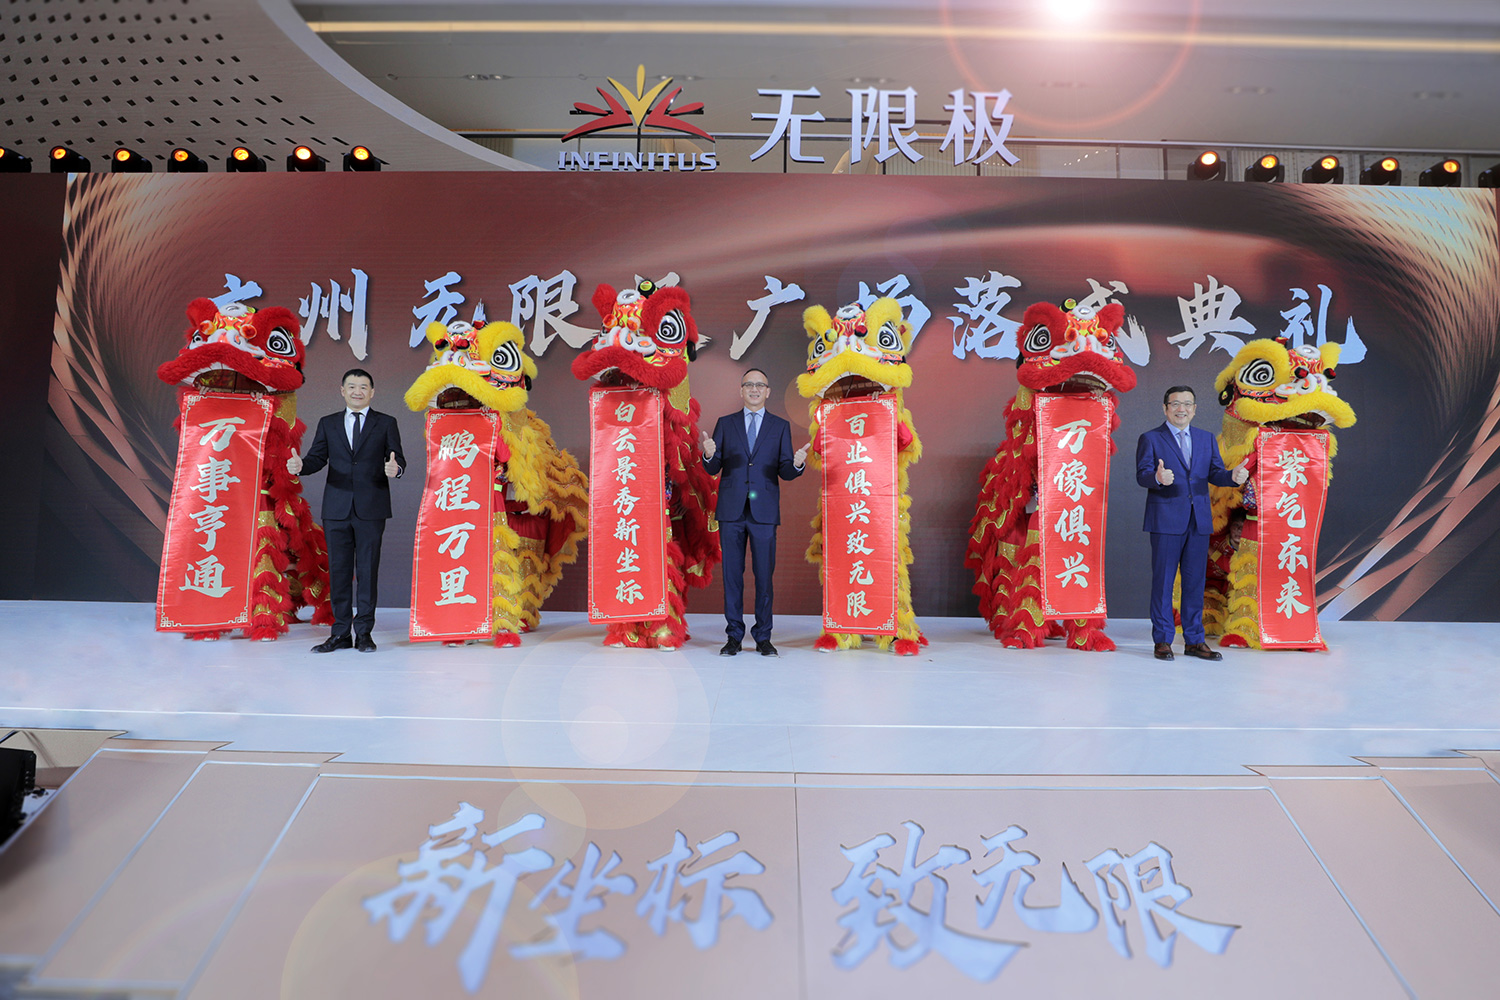 无限极广场落成典礼-李惠森先生（中）、俞江林先生（右）、马英枢先生（左）合影